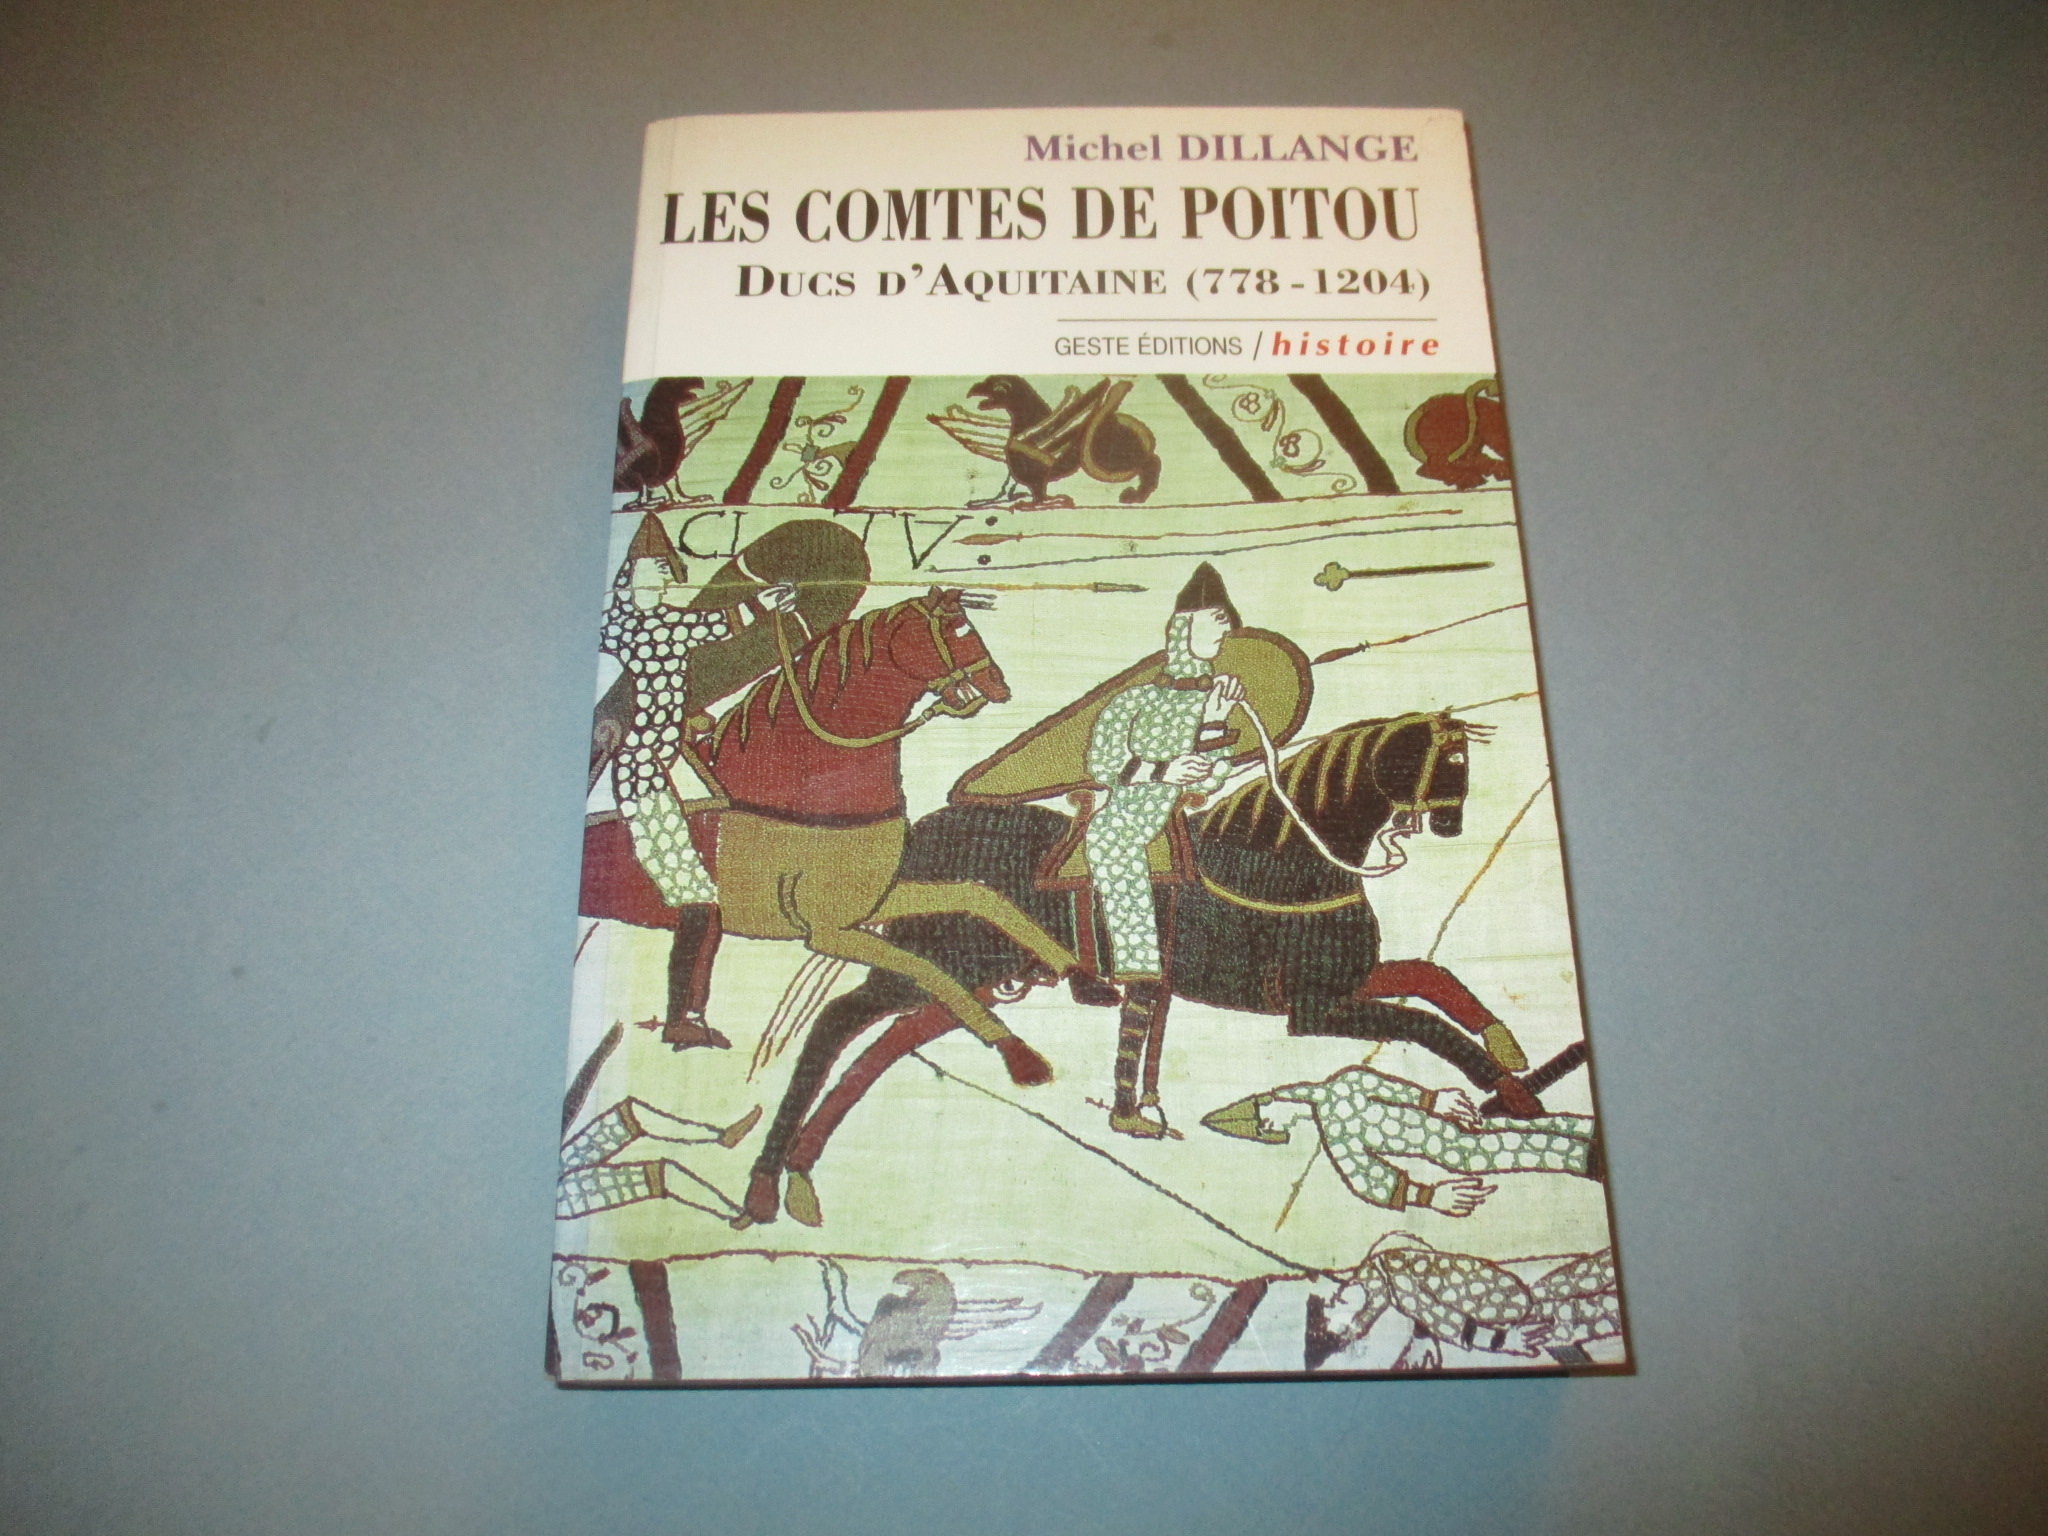 Les Comtes de Poitou, Ducs d\'Aquitaine (778-1204), Michel Dillange, Histoire / Geste éditions